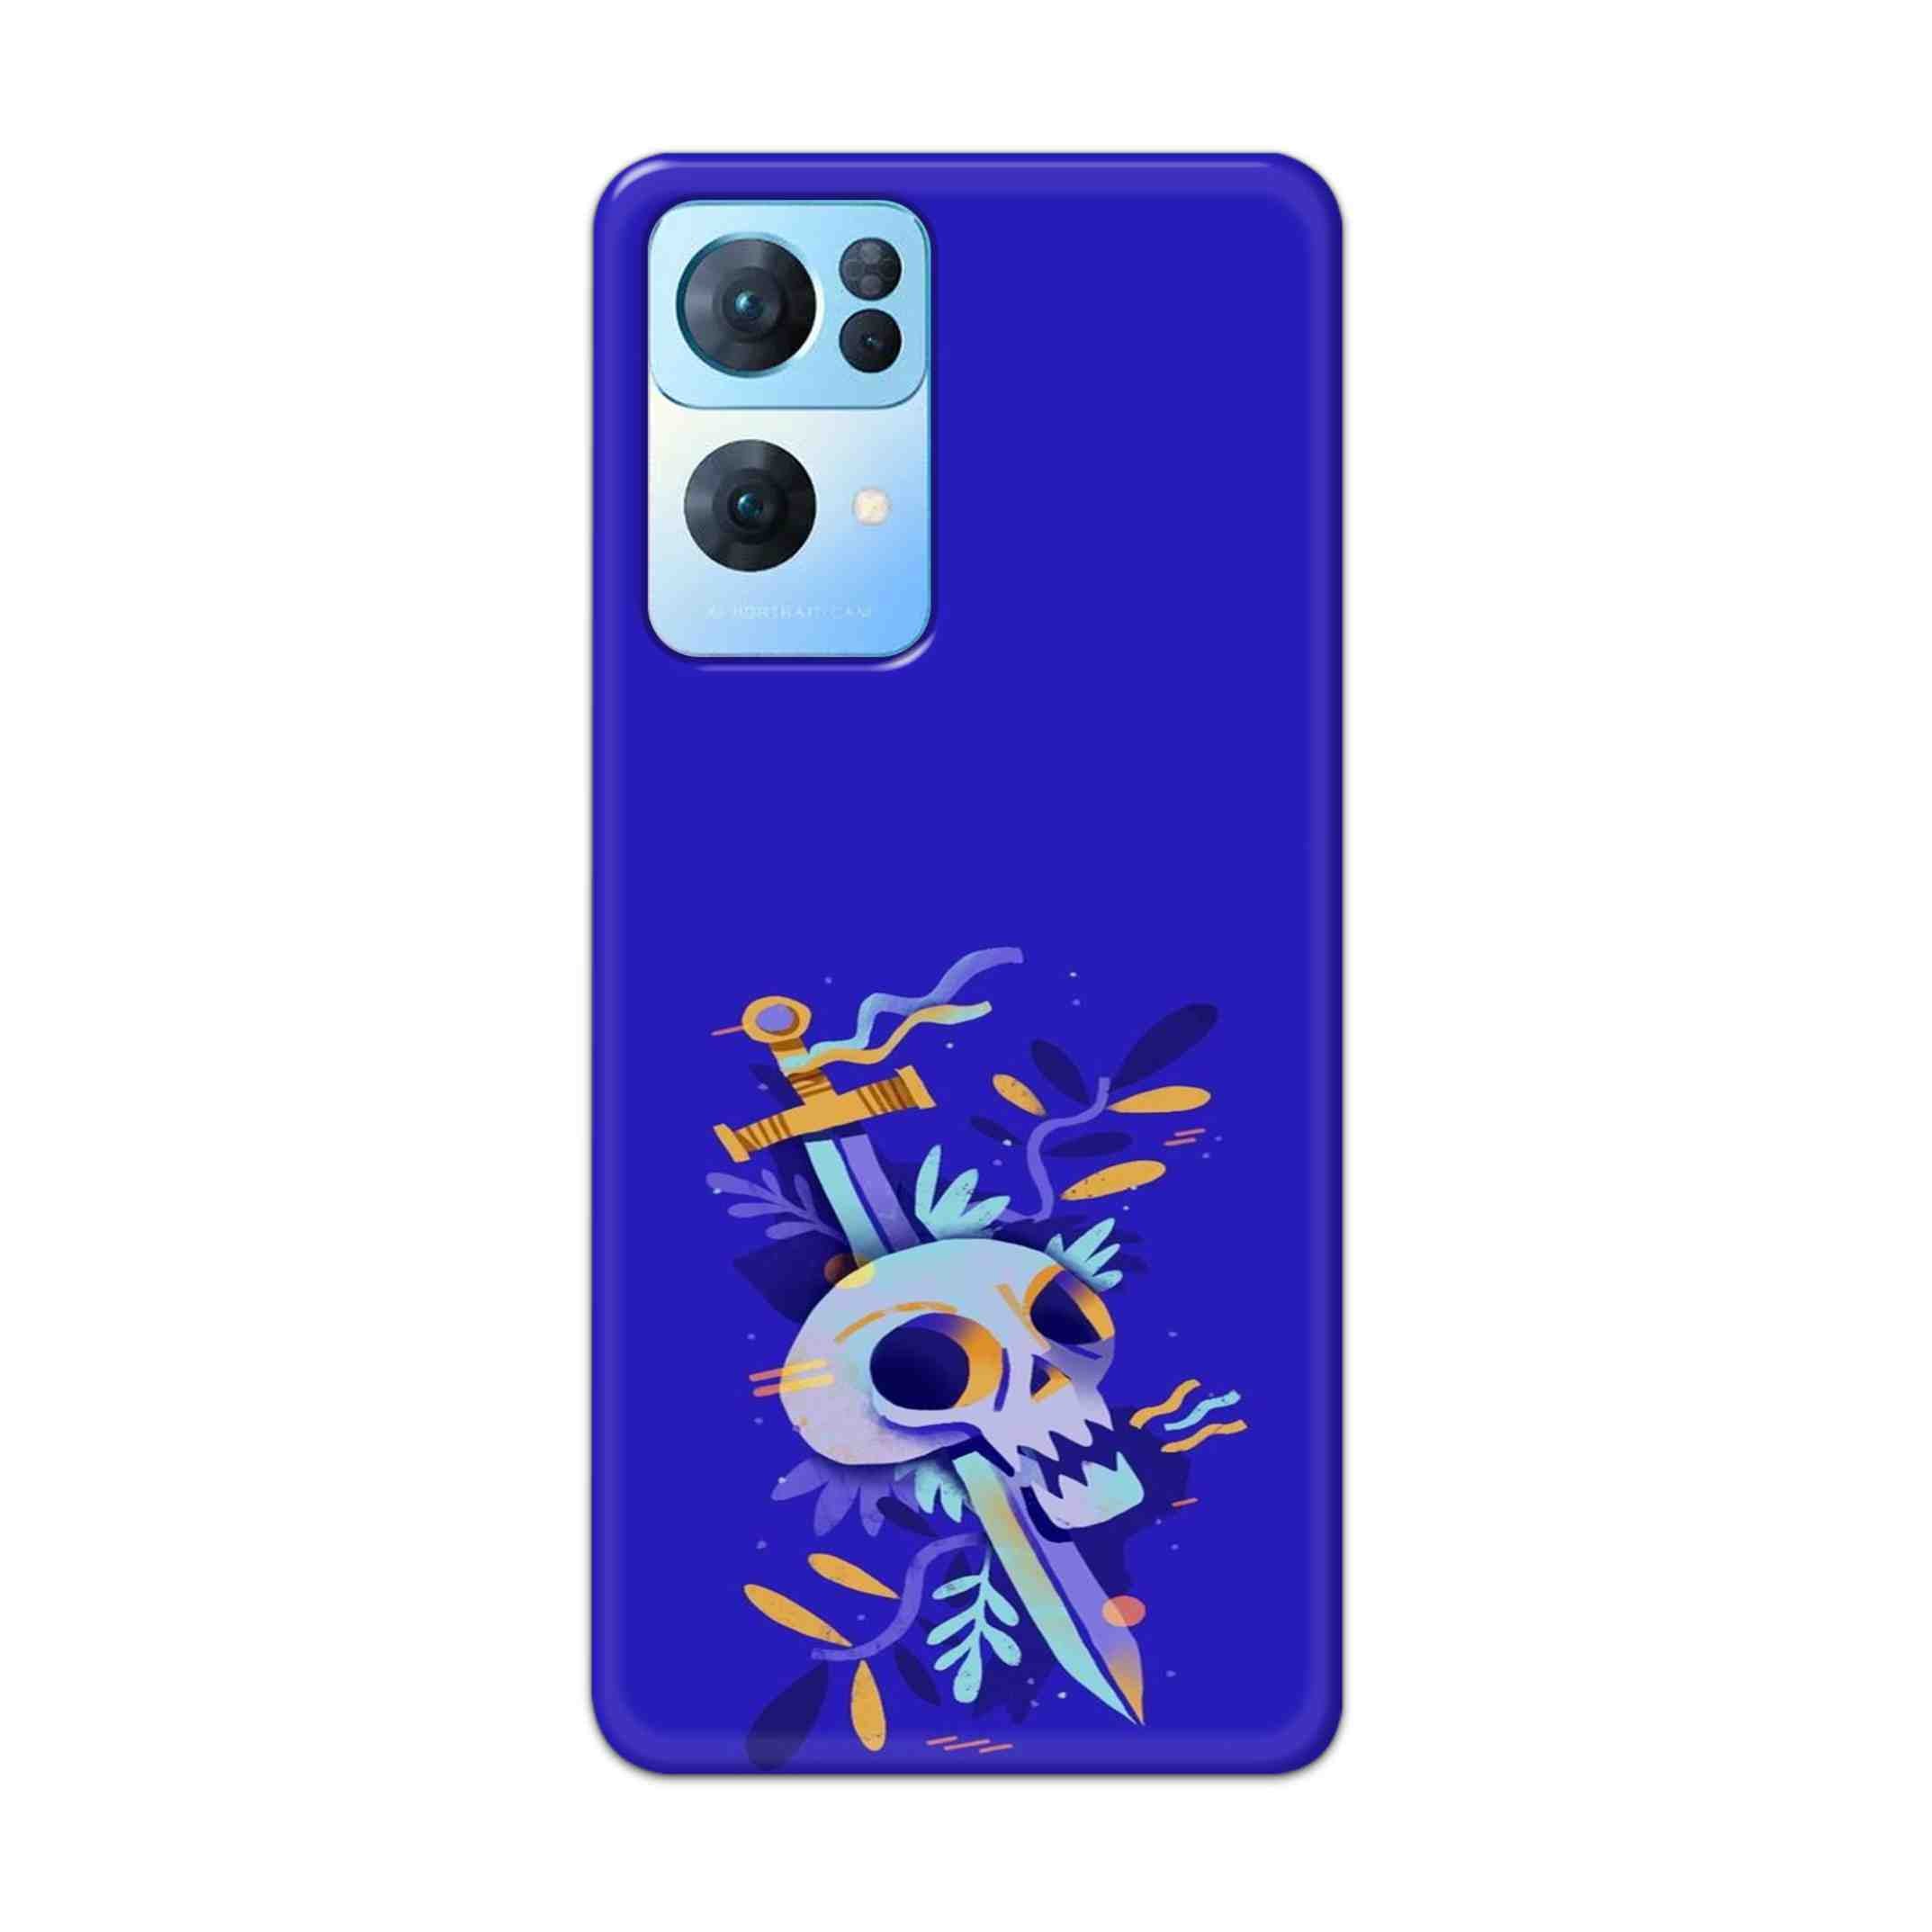 Buy Blue Skull Hard Back Mobile Phone Case Cover For Oppo Reno 7 Pro Online